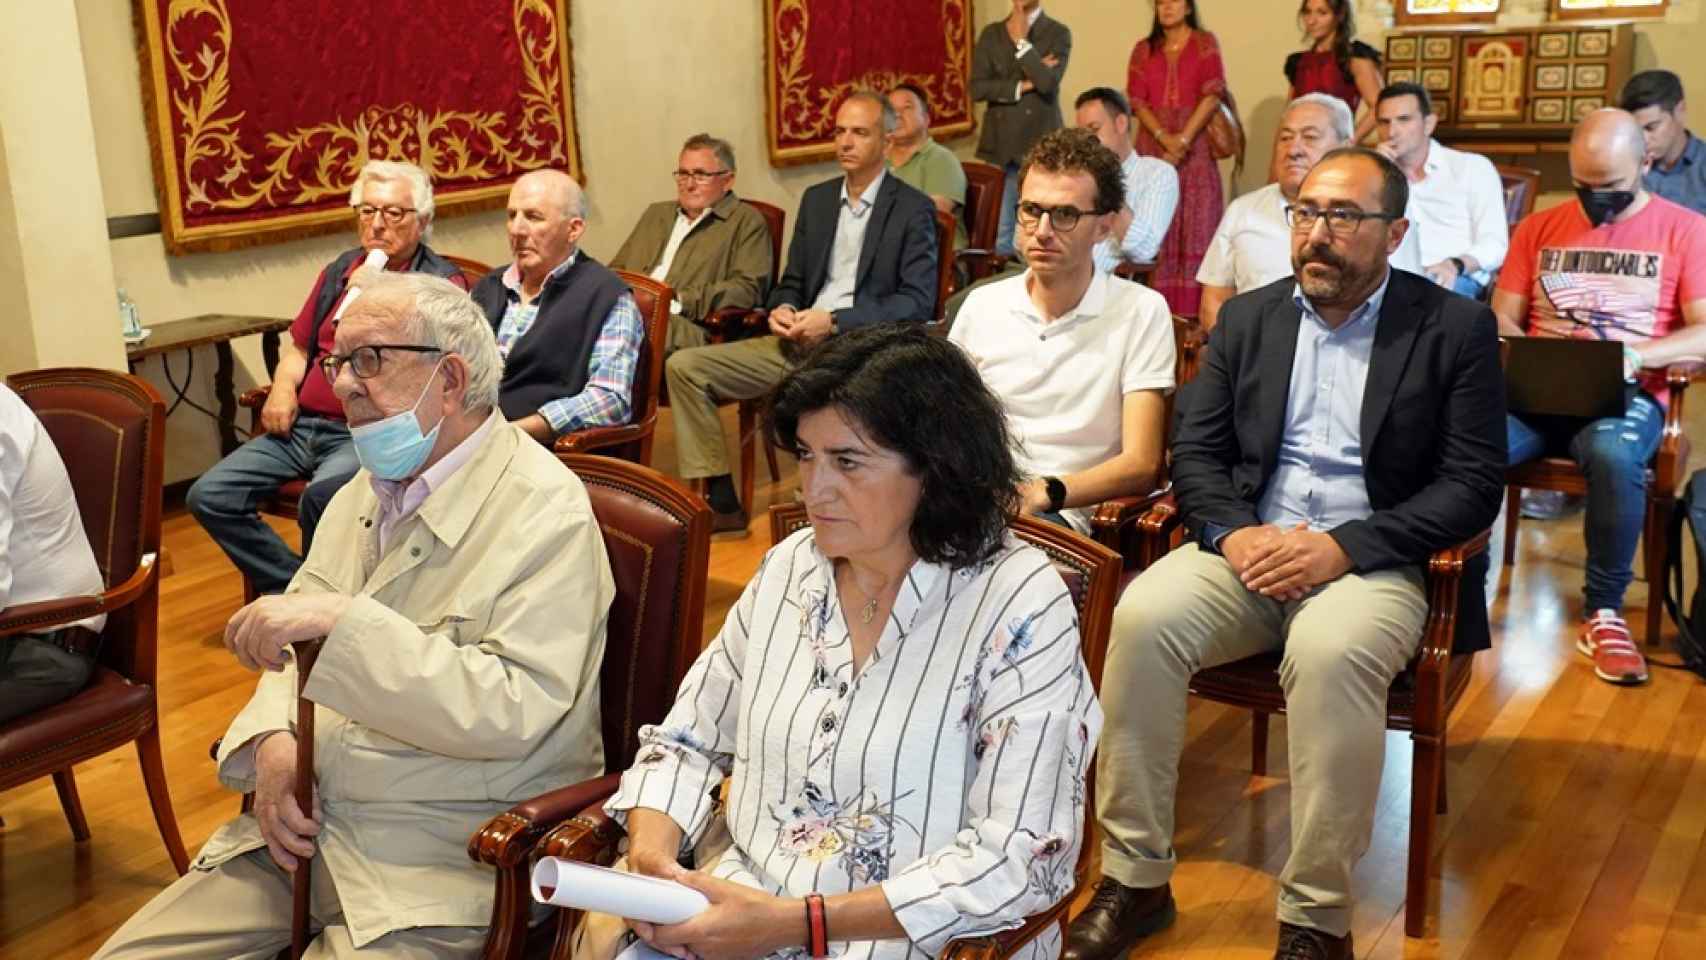 La sala de la Diputación de Valladolid abarrotada en la presentación de los Coloquios taurinos